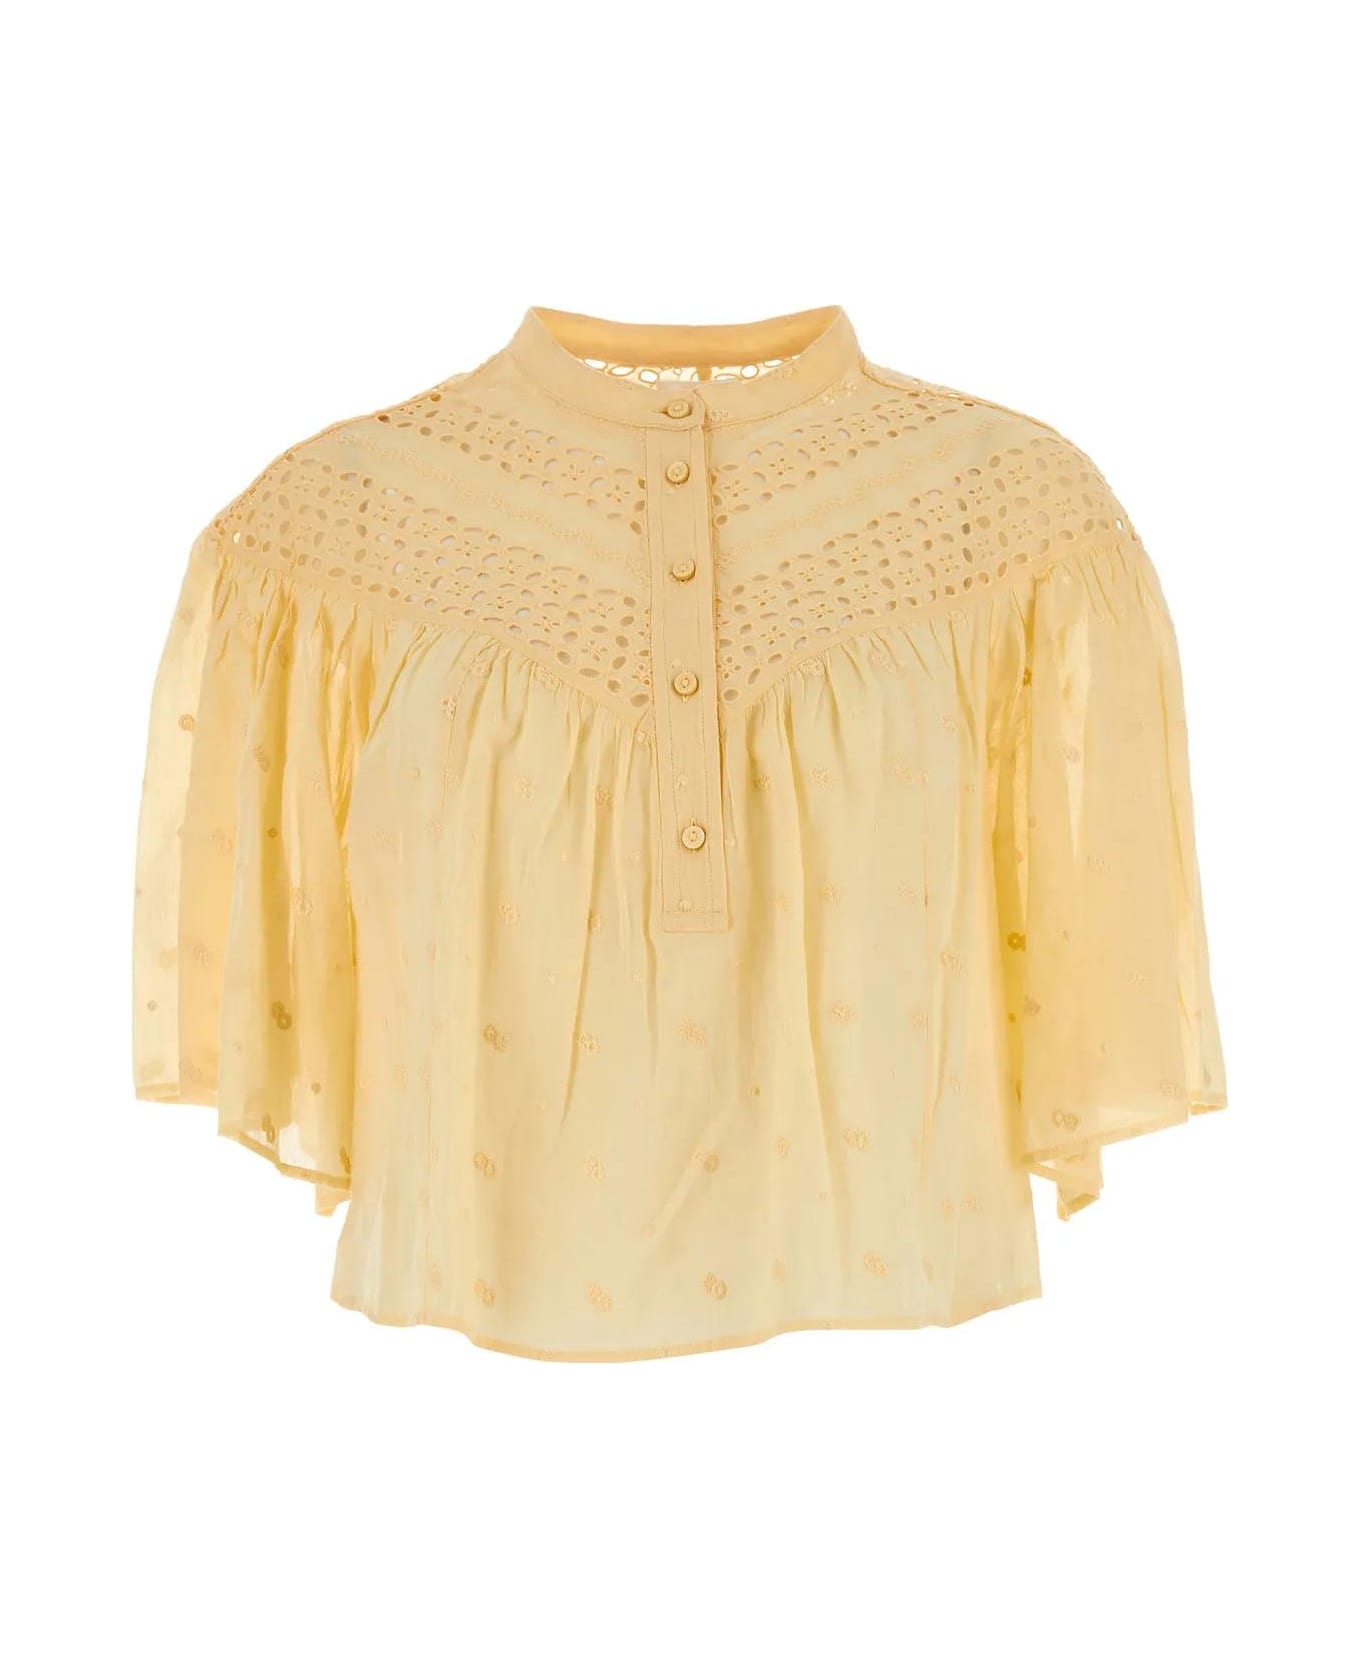 Marant Étoile Yellow Cotton Safi Blouse - Sunlight